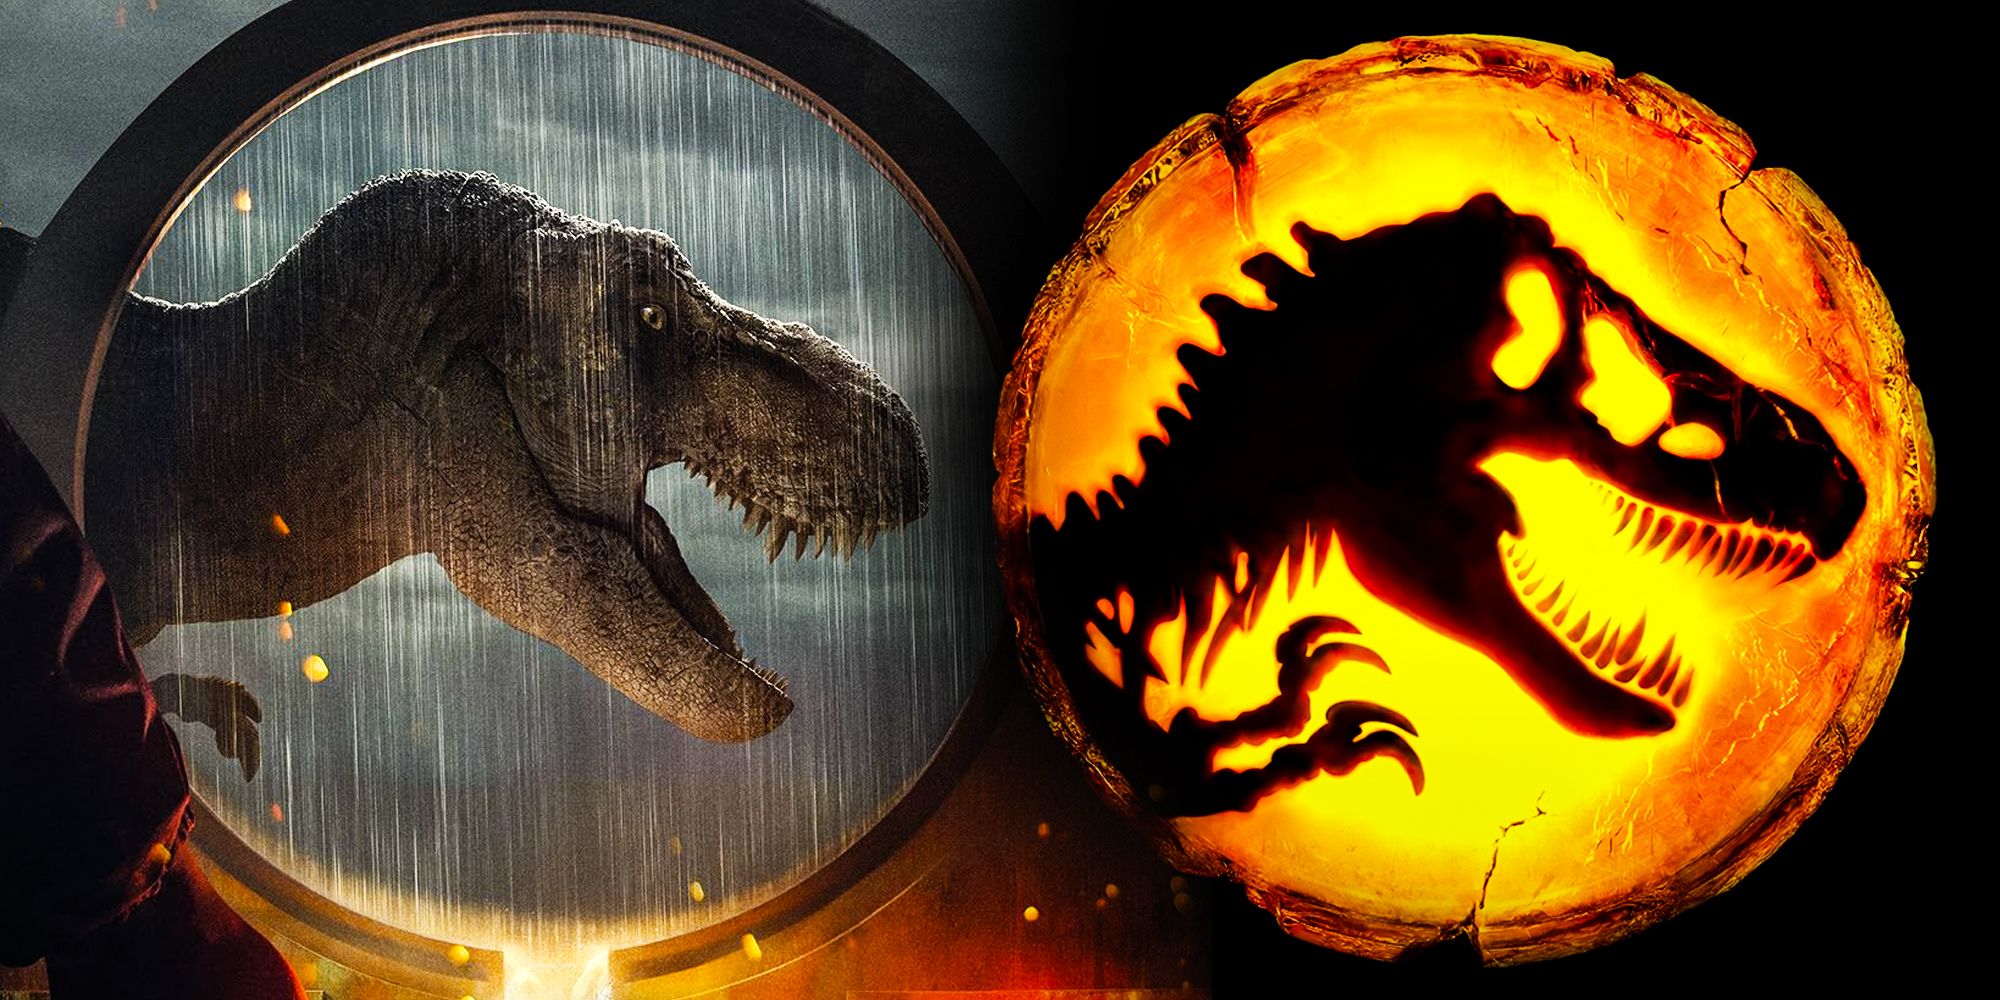 Dominion recrea el logo de Jurassic Park de la manera más vergonzosa